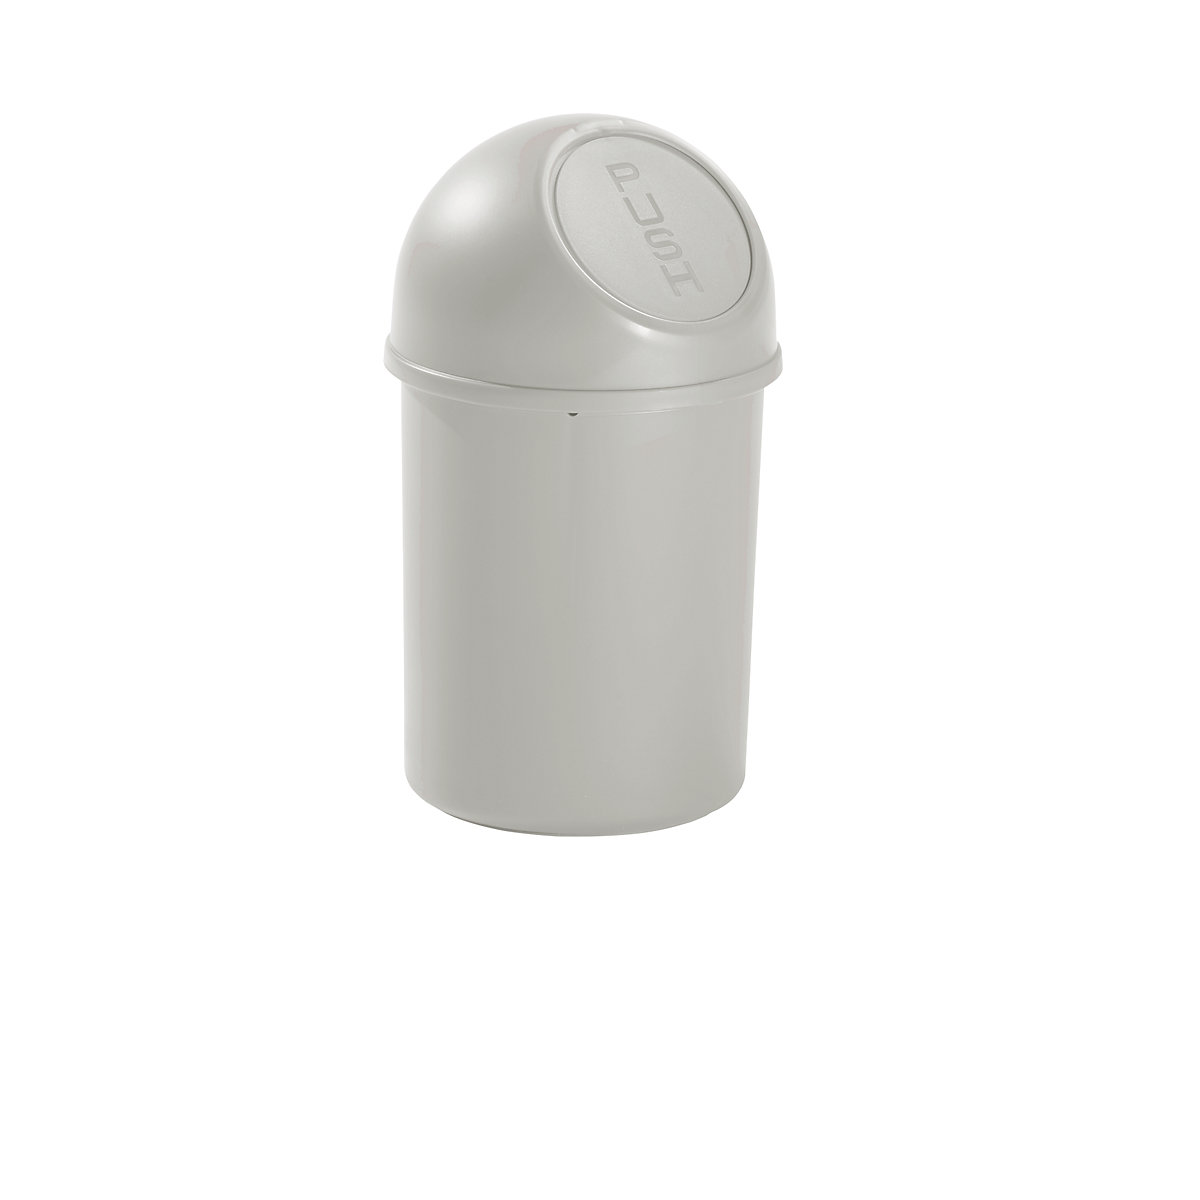 Push-Abfallbehälter aus Kunststoff helit, Volumen 6 l, VE 6, HxØ 375 x 216 mm, lichtgrau-5